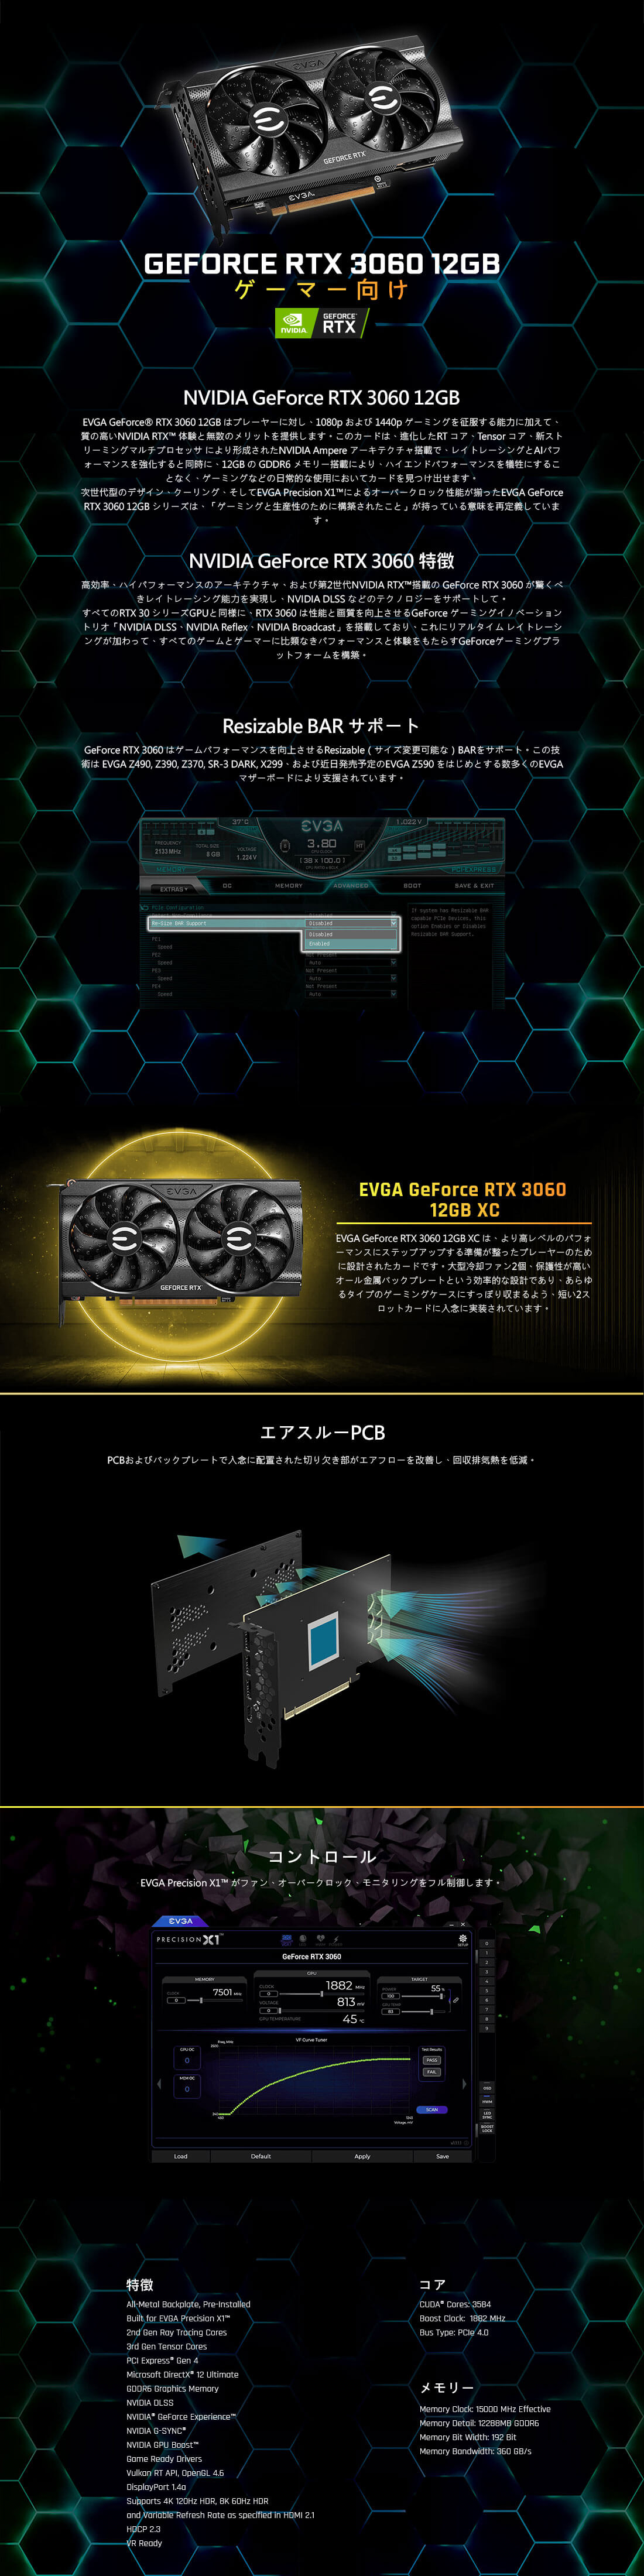 EVGA - JP - 製品 - EVGA GeForce RTX 3060 XC GAMING, 12G-P5-3657-KR 